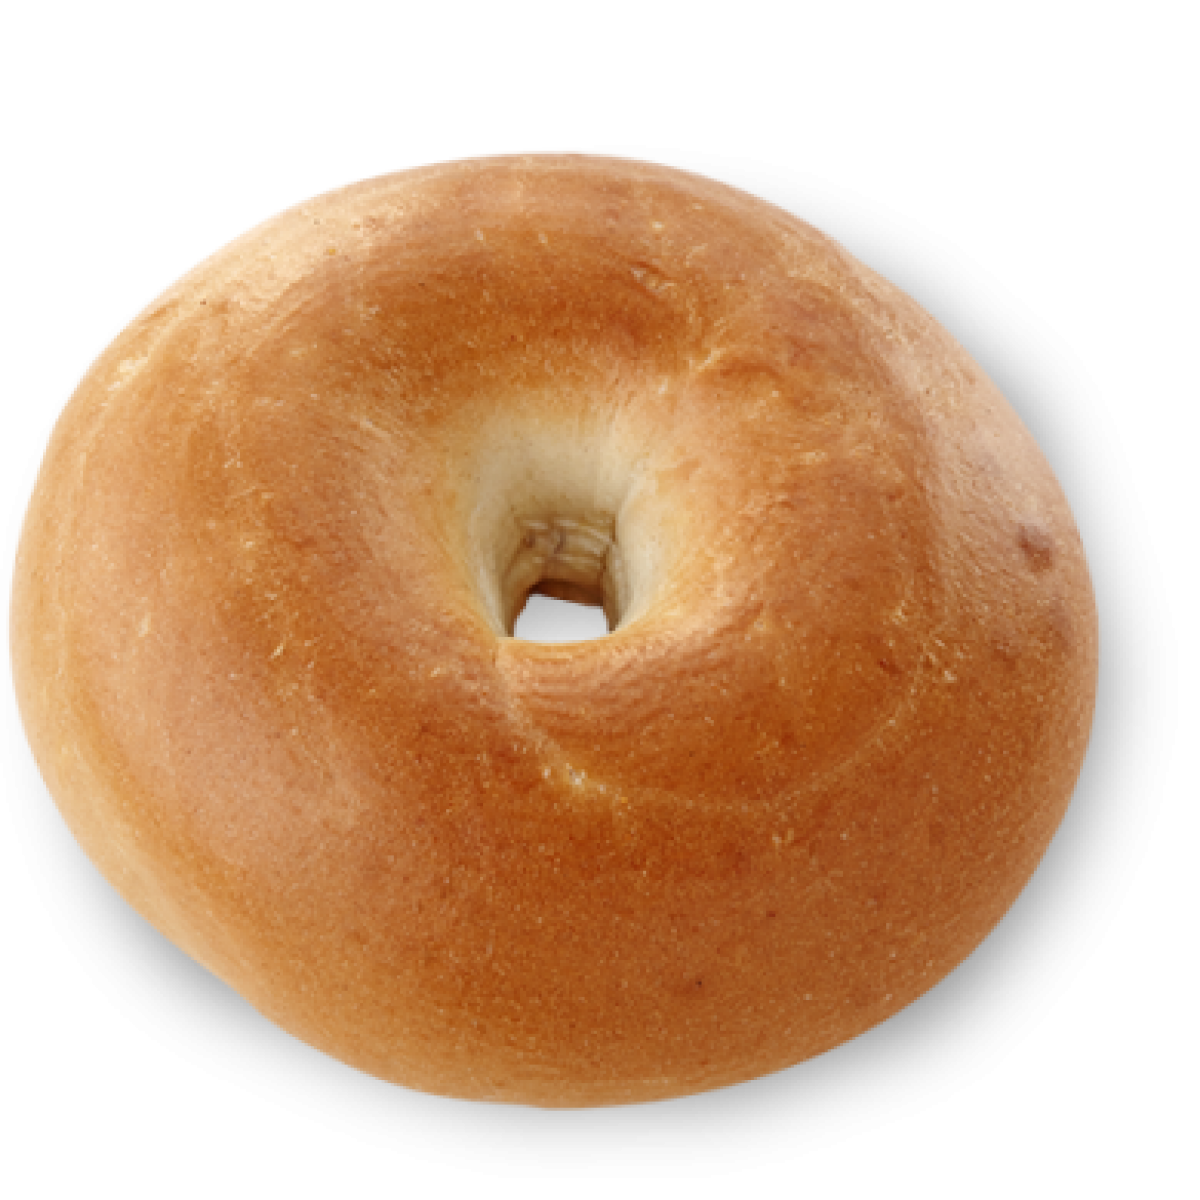 Pngimg com on twitter. Doughnut clipart bagel